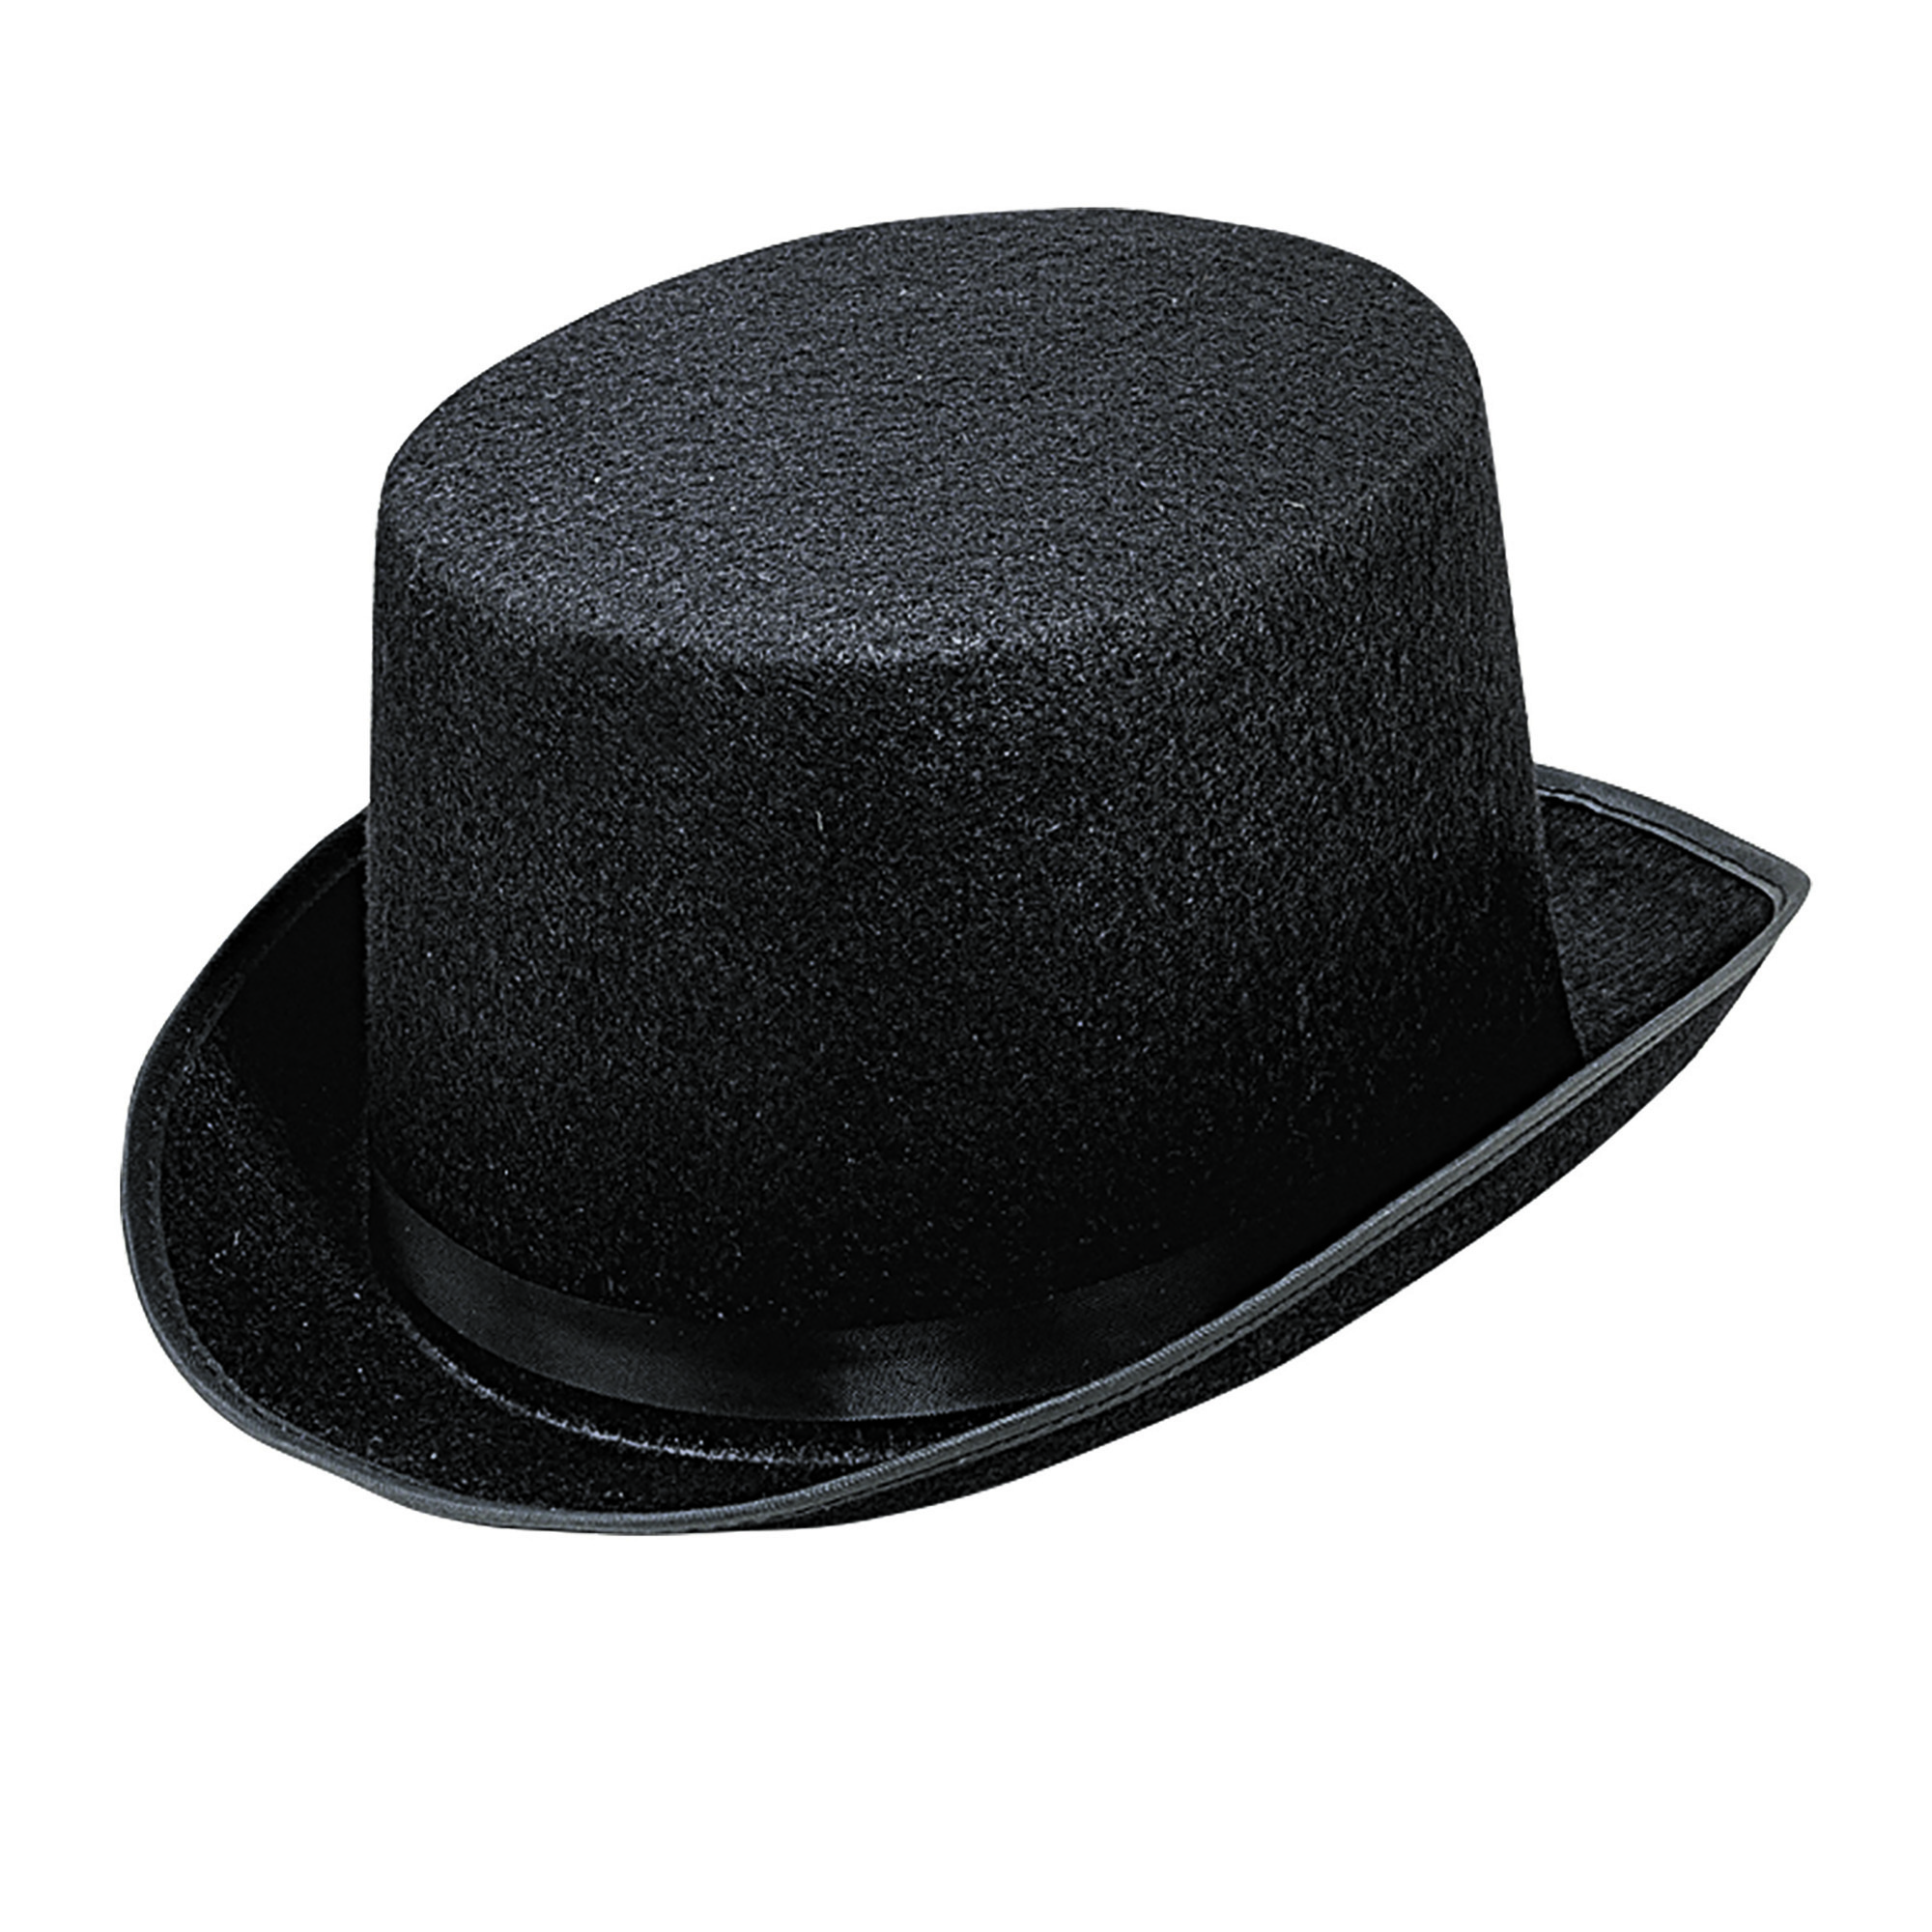 Hoge hoed vilt zwart